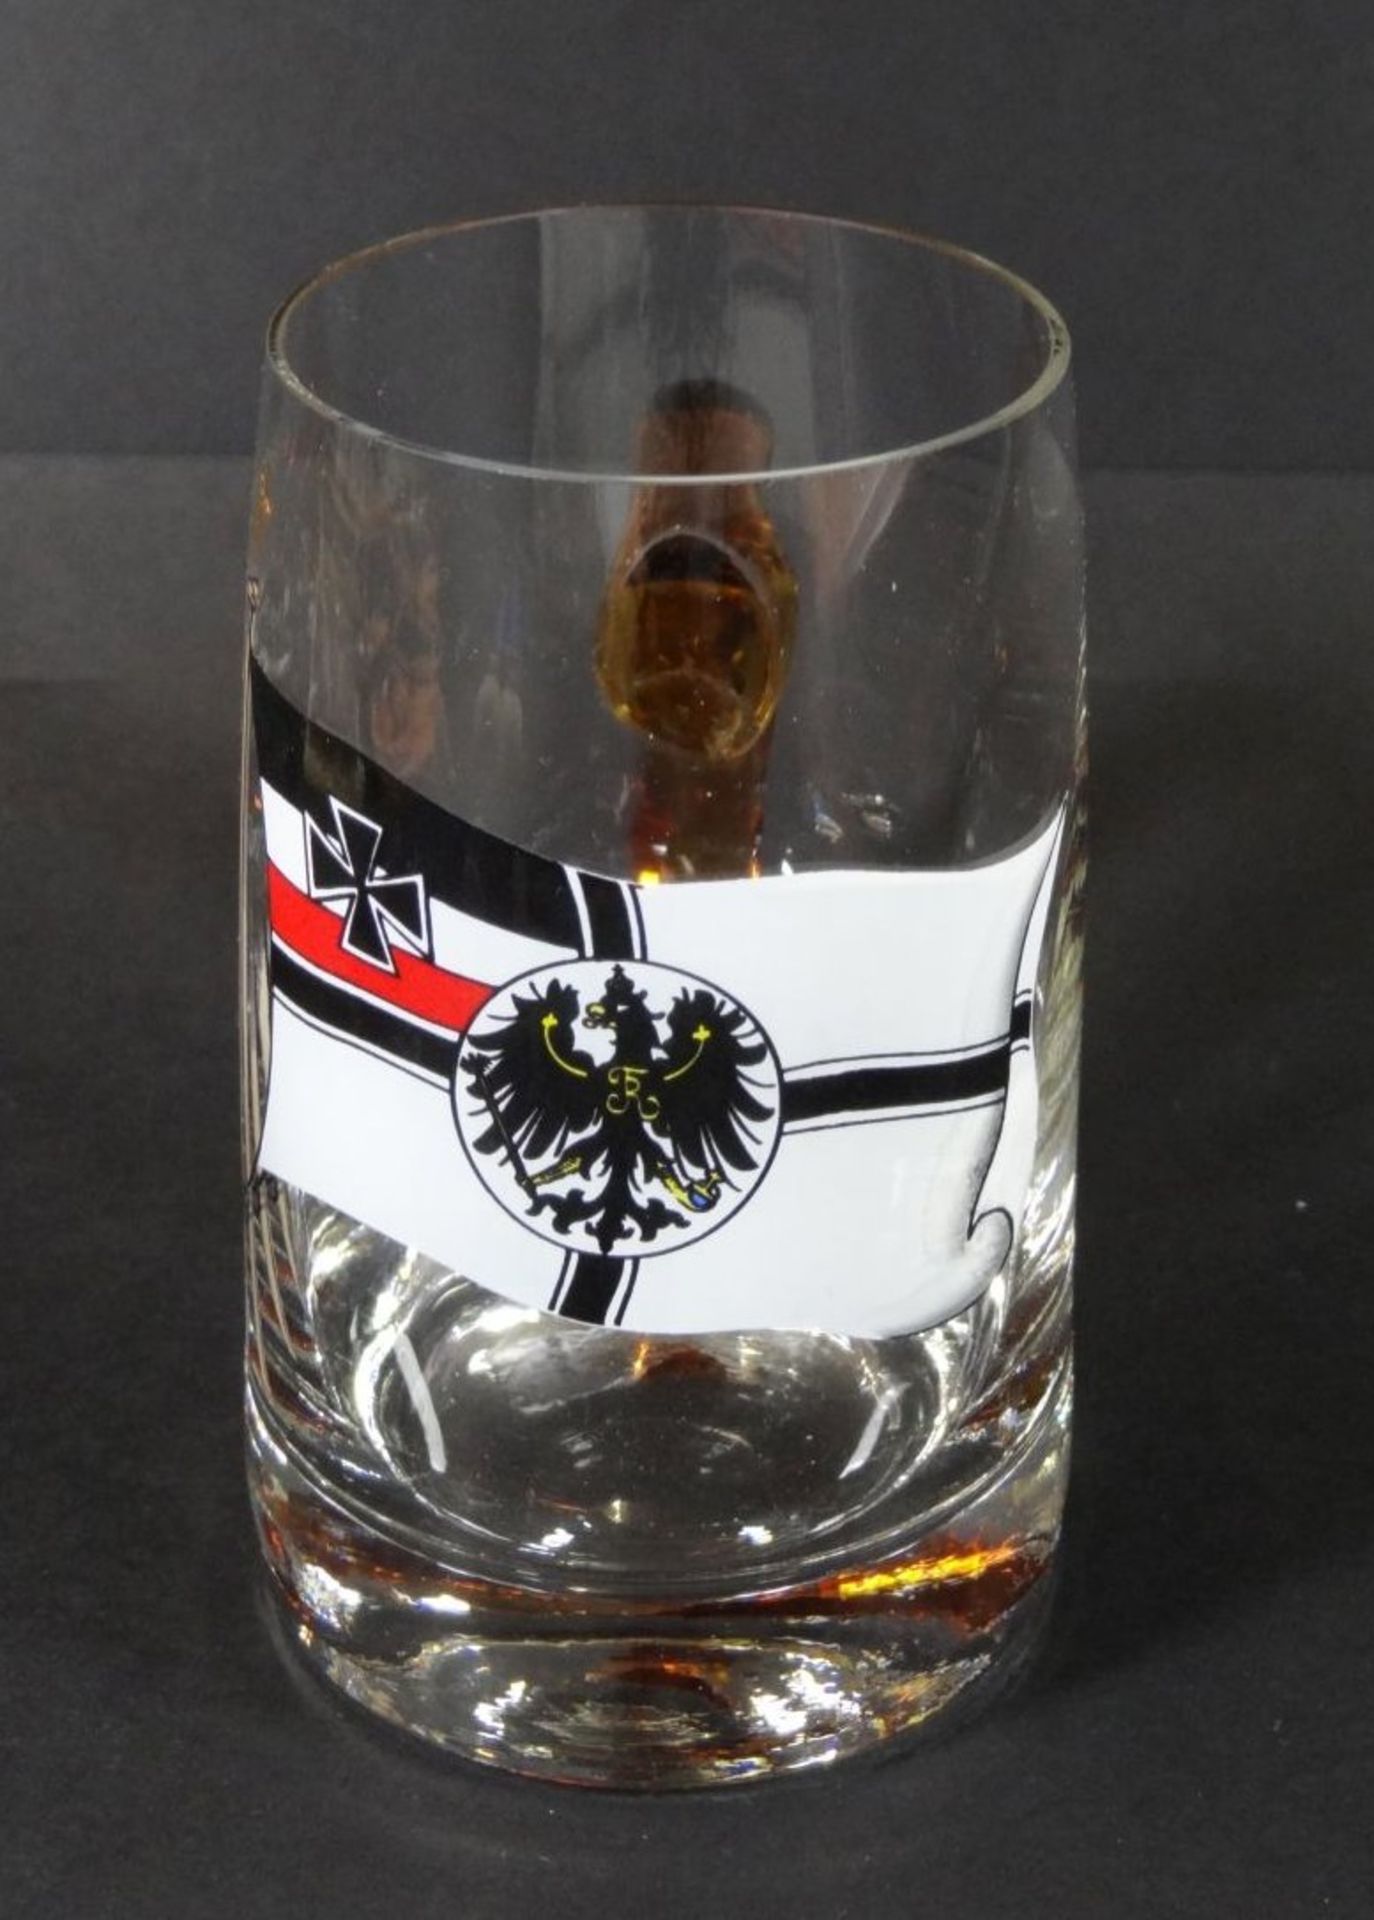 Bierkrug 0,25 mit Deutsche Reichsfahne in Emaillefarben, H-12 cm- - -22.61 % buyer's premium on